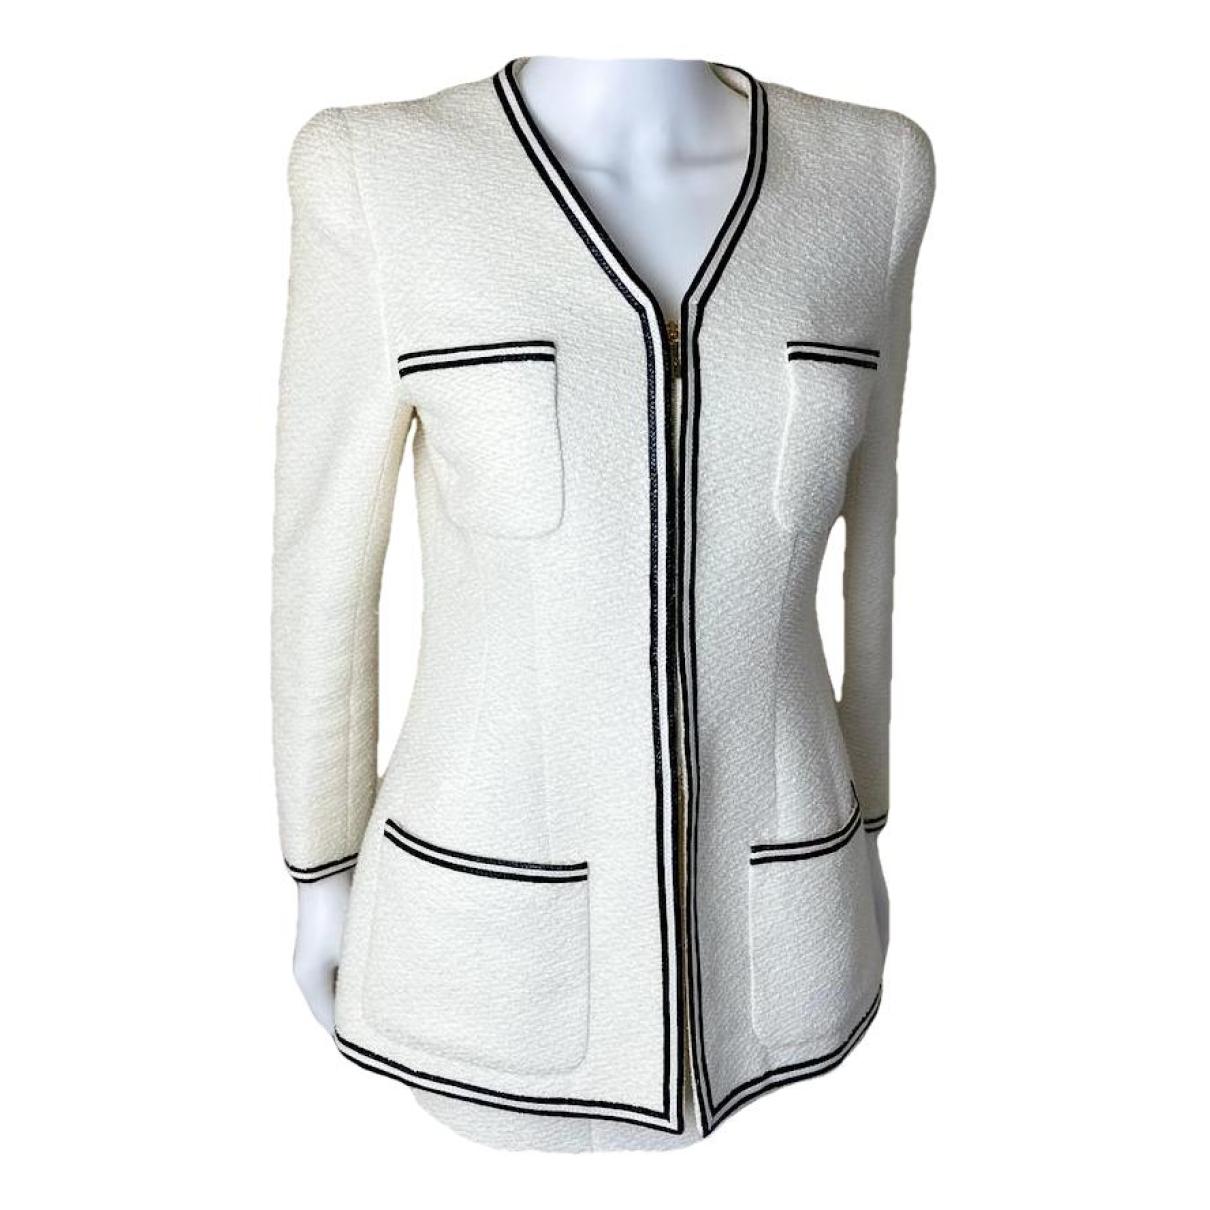 Chanel Grey/White Tweed Painted Grid Jacket Size 8/40 - Yoogi's Closet